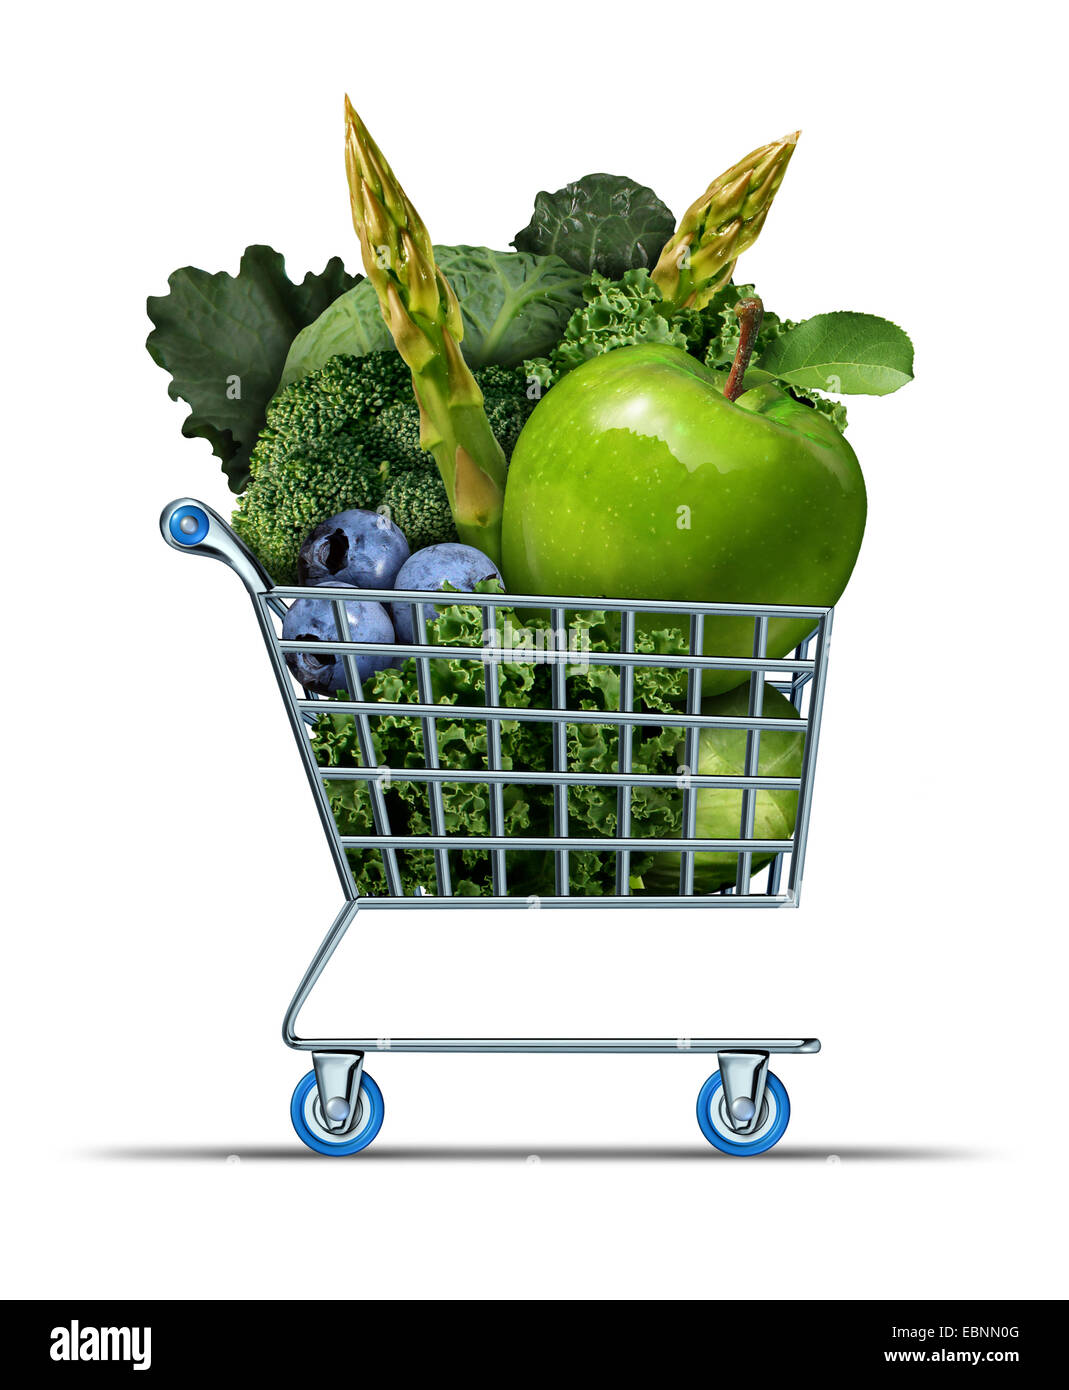 Shopping en bonne santé qu'un supermarché panier rempli de légumes frais et vert comme fruit comme un symbole d'aliments de santé pour bien vivre en achetant des produits du marché sur un fond blanc. Banque D'Images